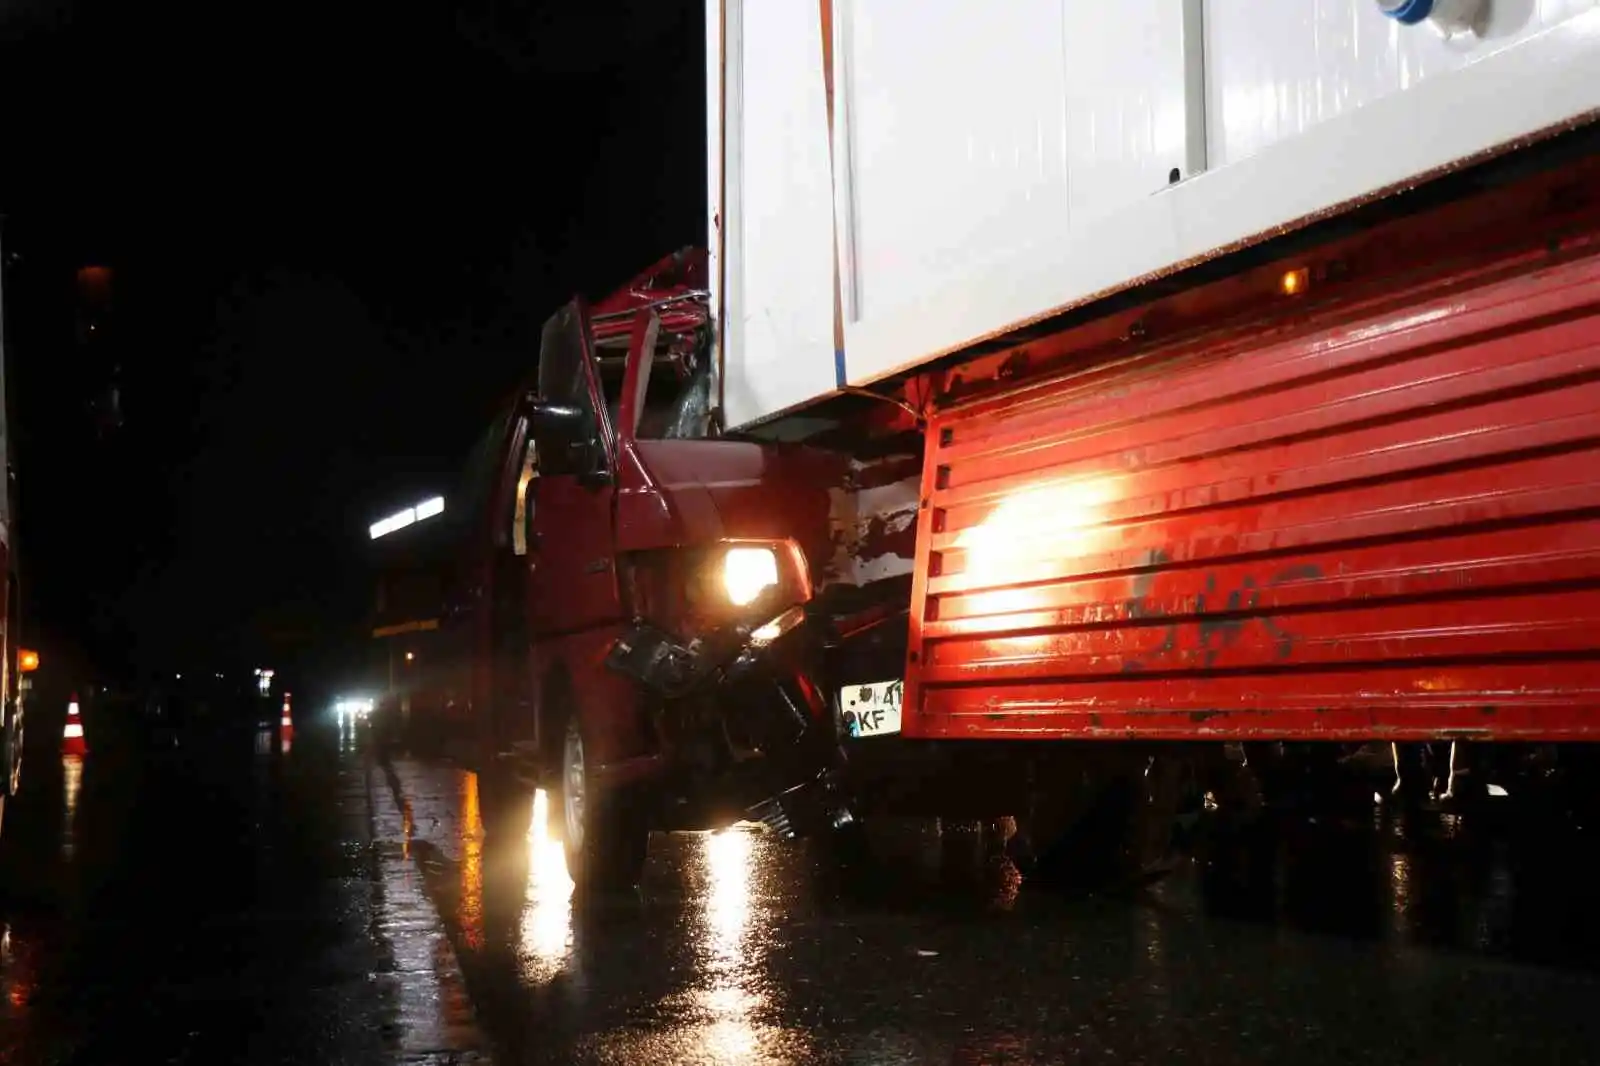 Minibüs, deprem bölgesine konteyner götüren tıra ok gibi saplandı: 1 ölü, 2 yaralı
